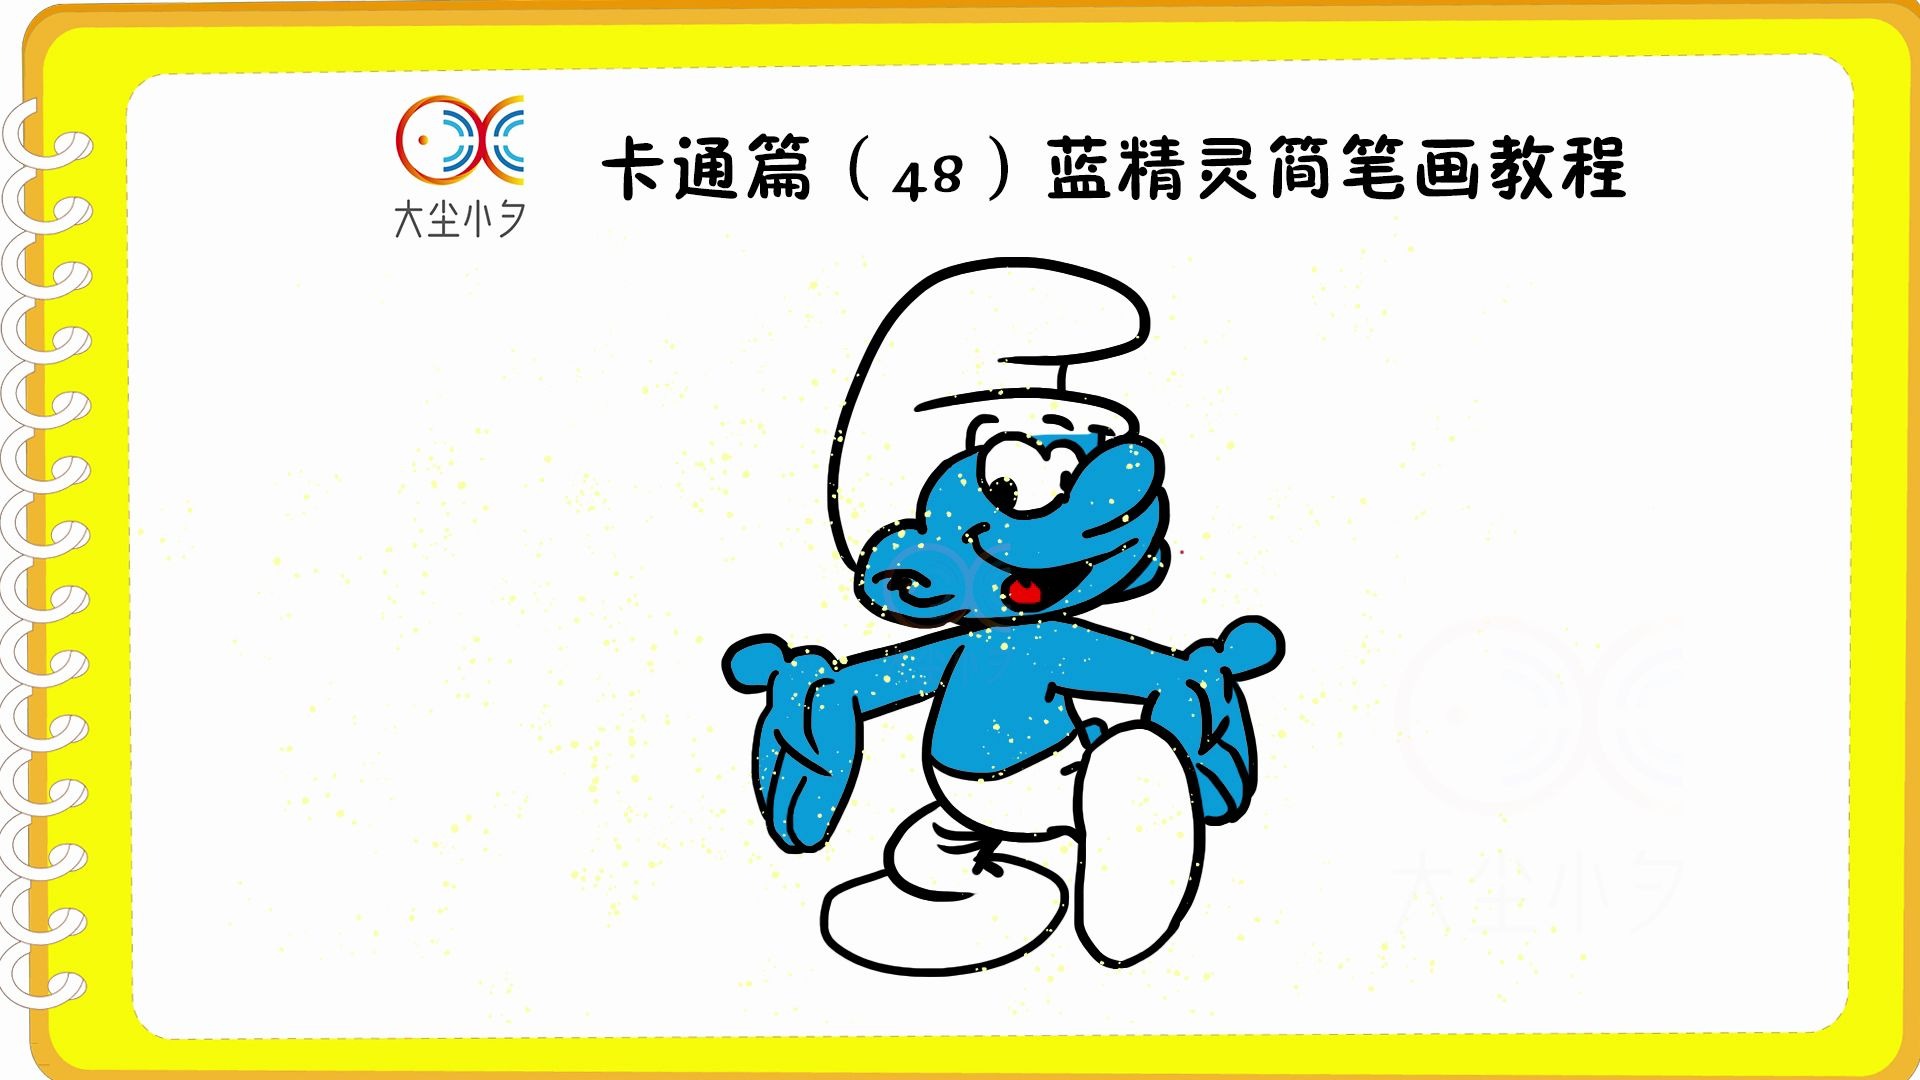 卡通篇(48)蓝精灵简笔画教程